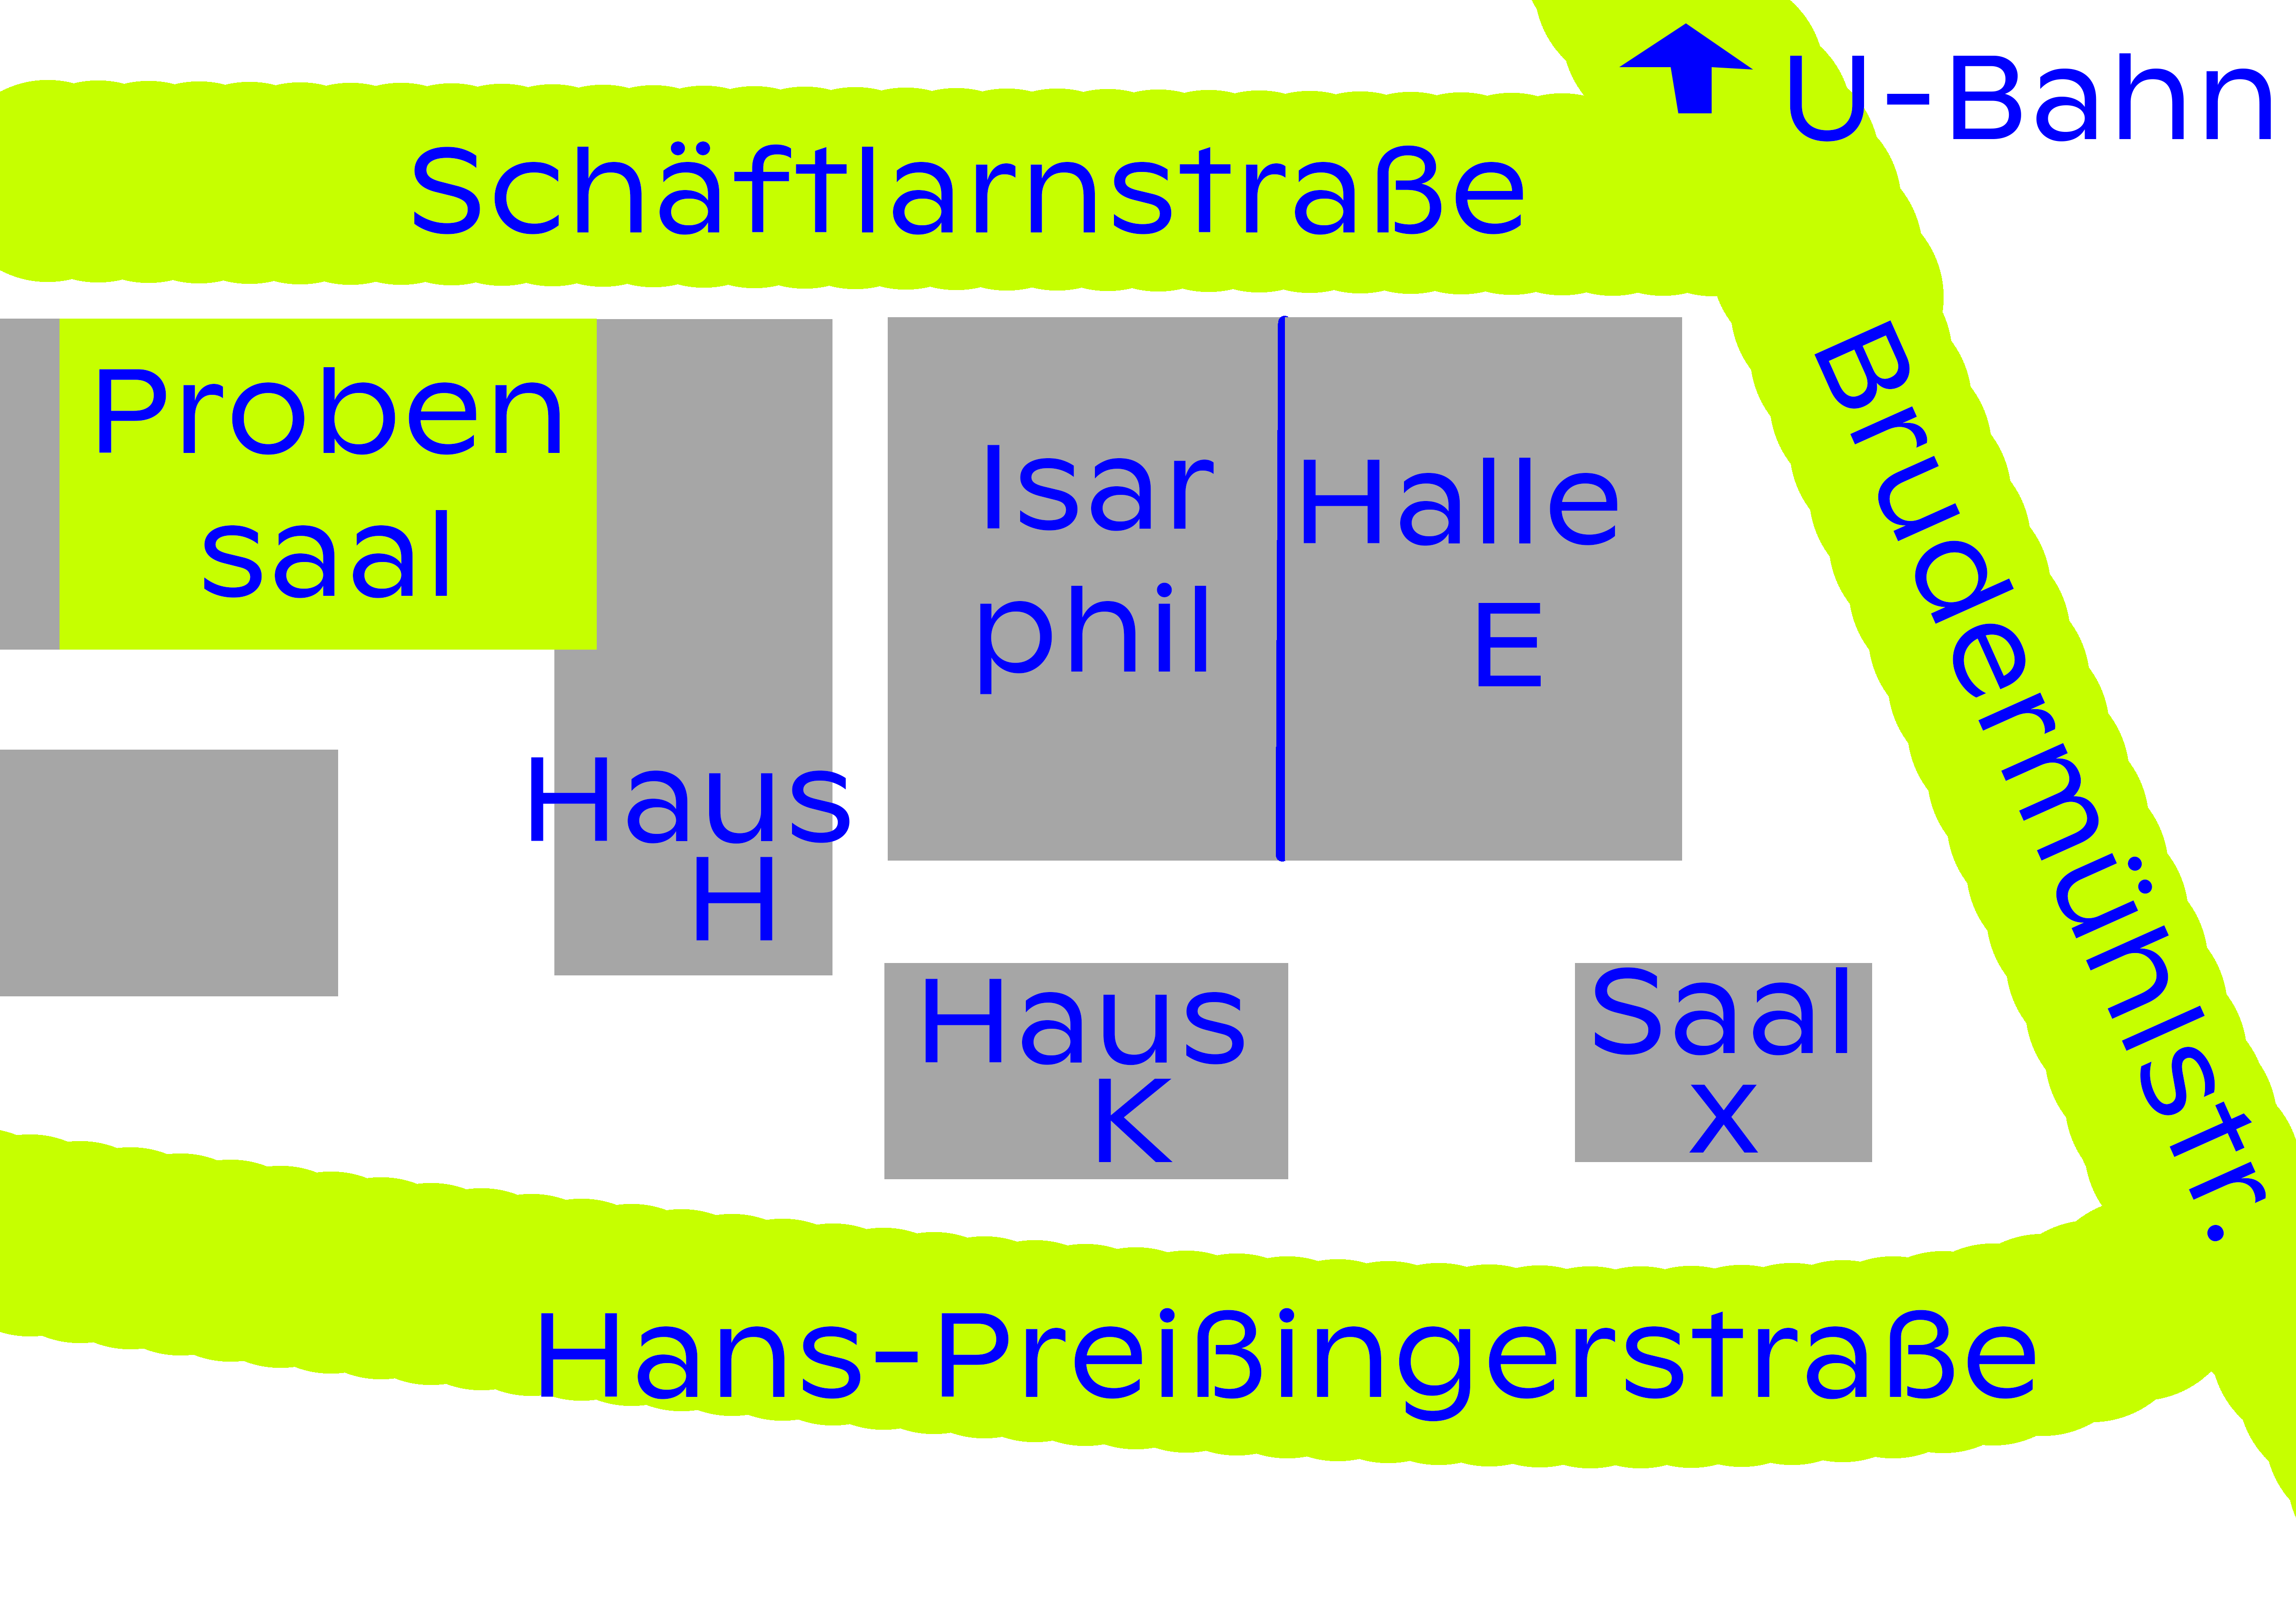 Lageplan des Probensaals. Der Gebäudekomplex des HP 8 wird im Norden durch die Schäftlarnstraße, im Osten durch die Brudermühlstraße und im Süden durch die Hans-Preißingerstraße begrenzt. Der Eingang zum Probensaal befindet sich kommend von der Hans-Preißingerstraße, im hinteren Teil des Geländes westlich neben dem Haus H. Isarphilarmonie, Halle E, Haus K und Saal X befinden sich vom Probensaal aus östlich.